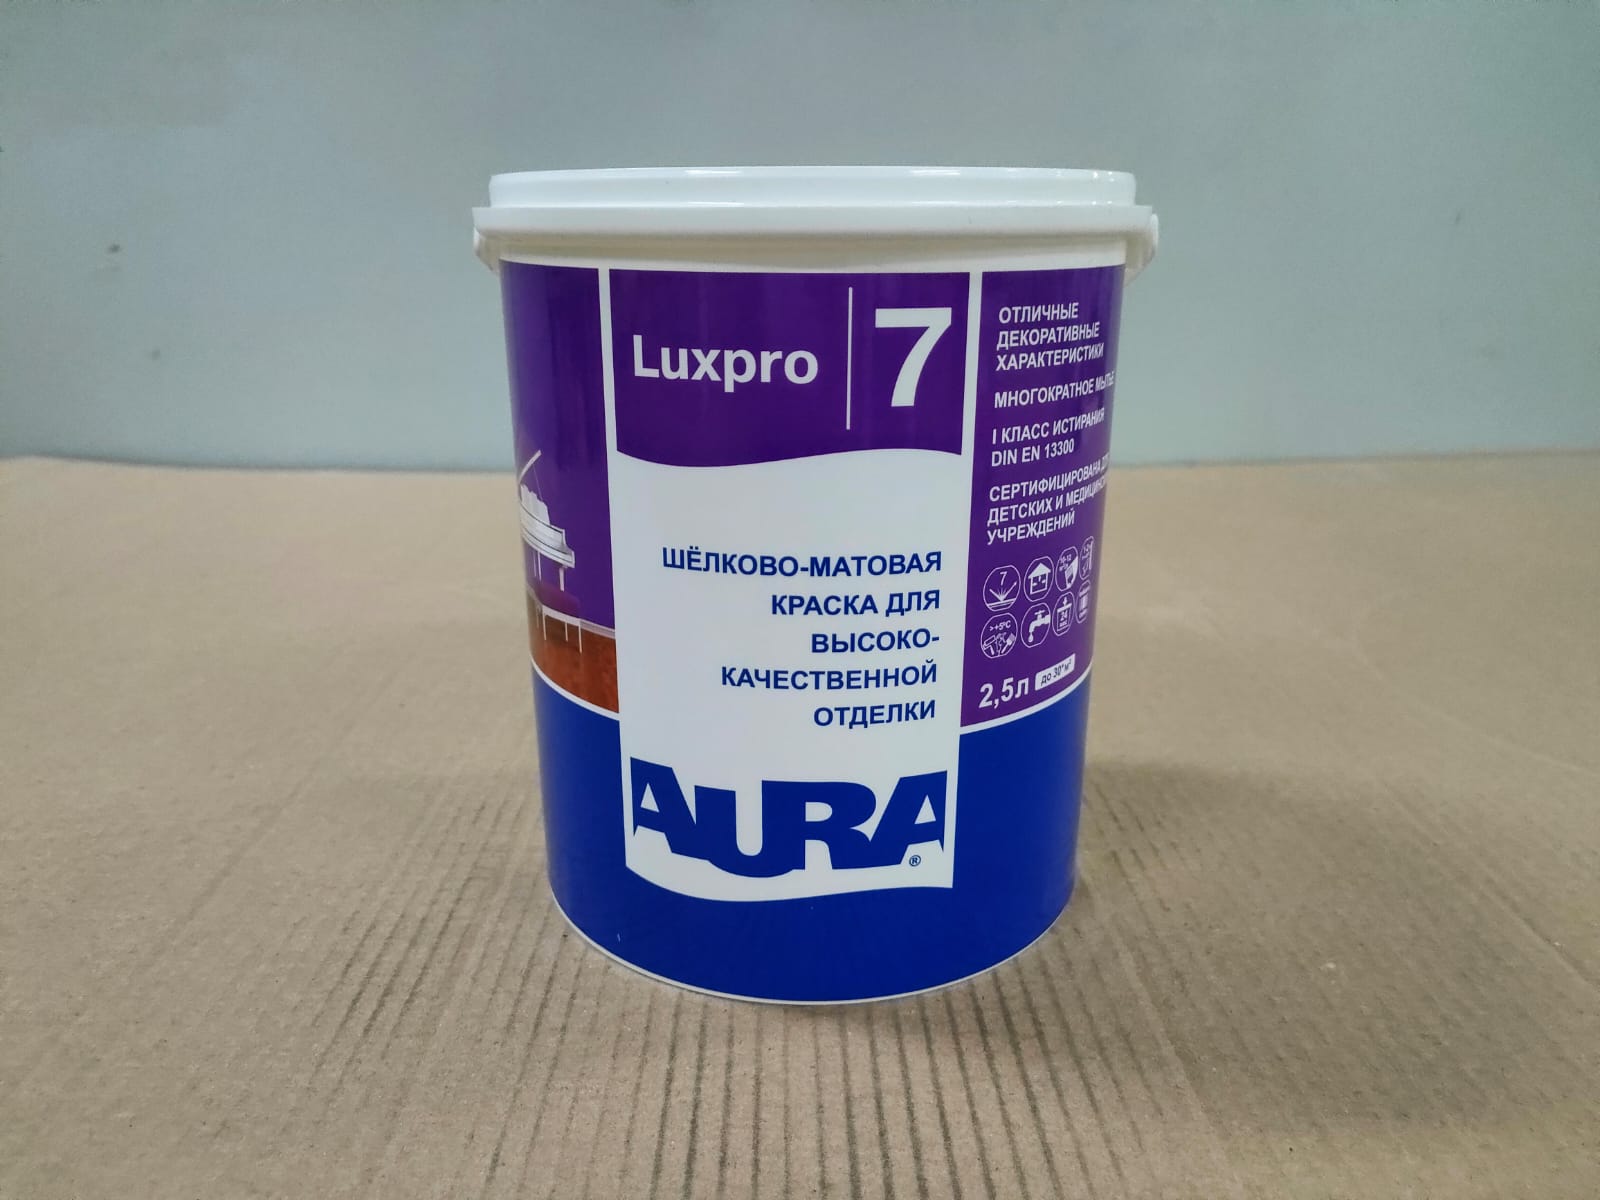 Краска шелково - матовая для внутренней отделки AURA Luxpro 7 / АУРА Люкспро 7 2,5л (база А)